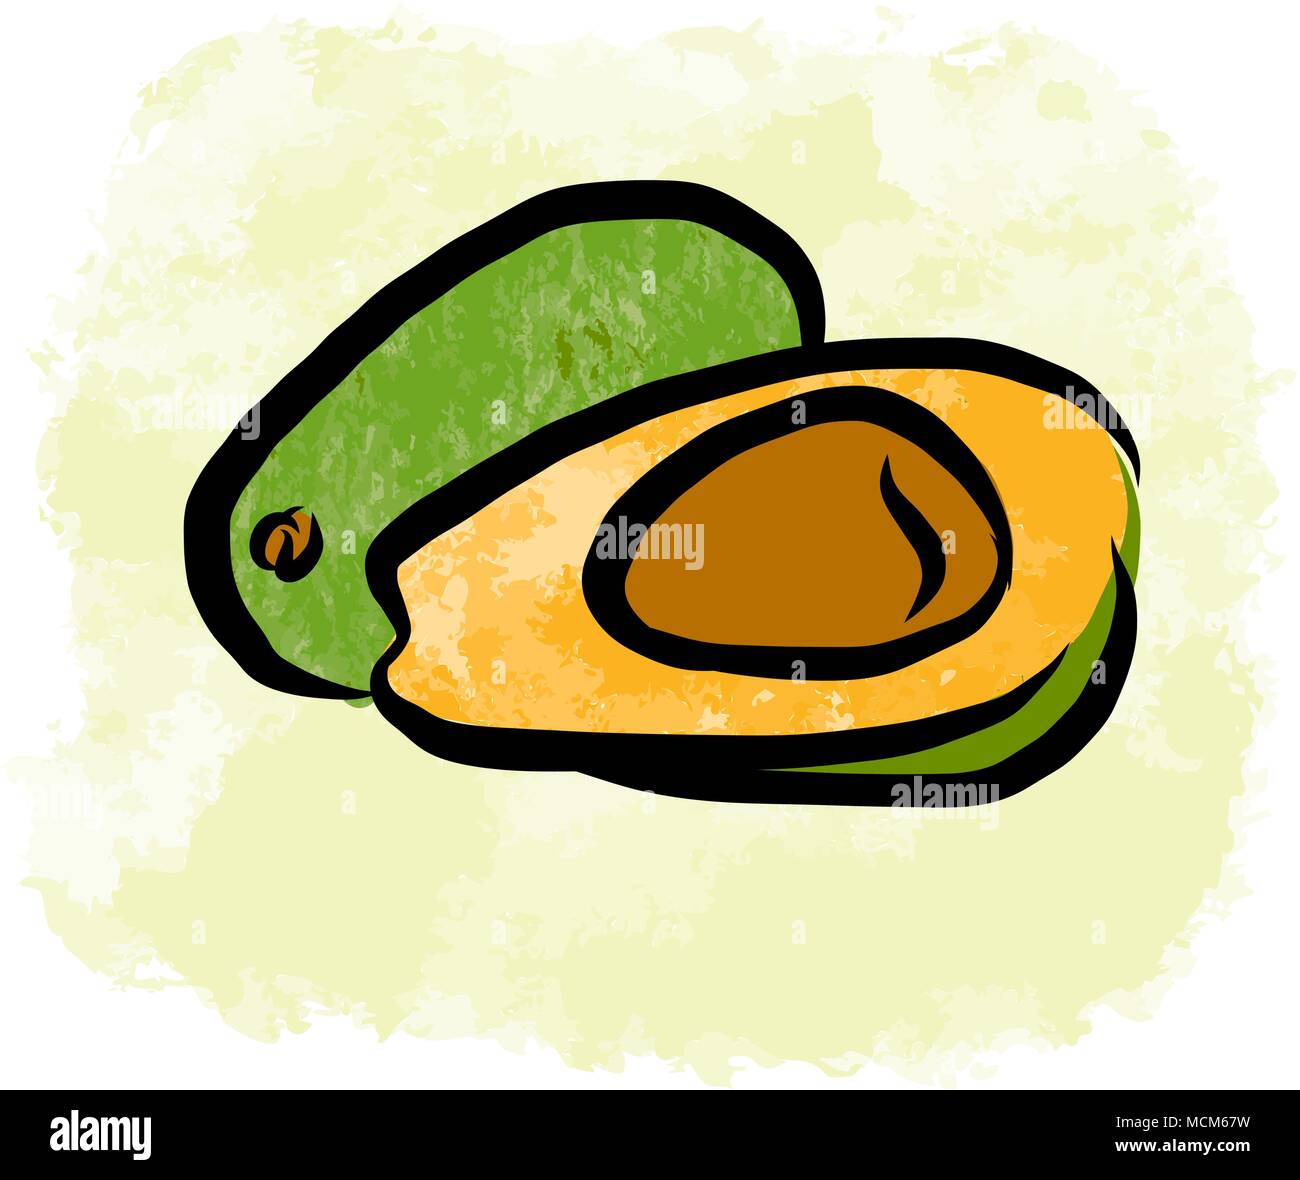 Farbige Zeichnung von avocados. Frisches Design mit bunten Früchten in Aquarell Stil. Modernes marketing Abbildung auf weißen Hintergrund. Stock Vektor